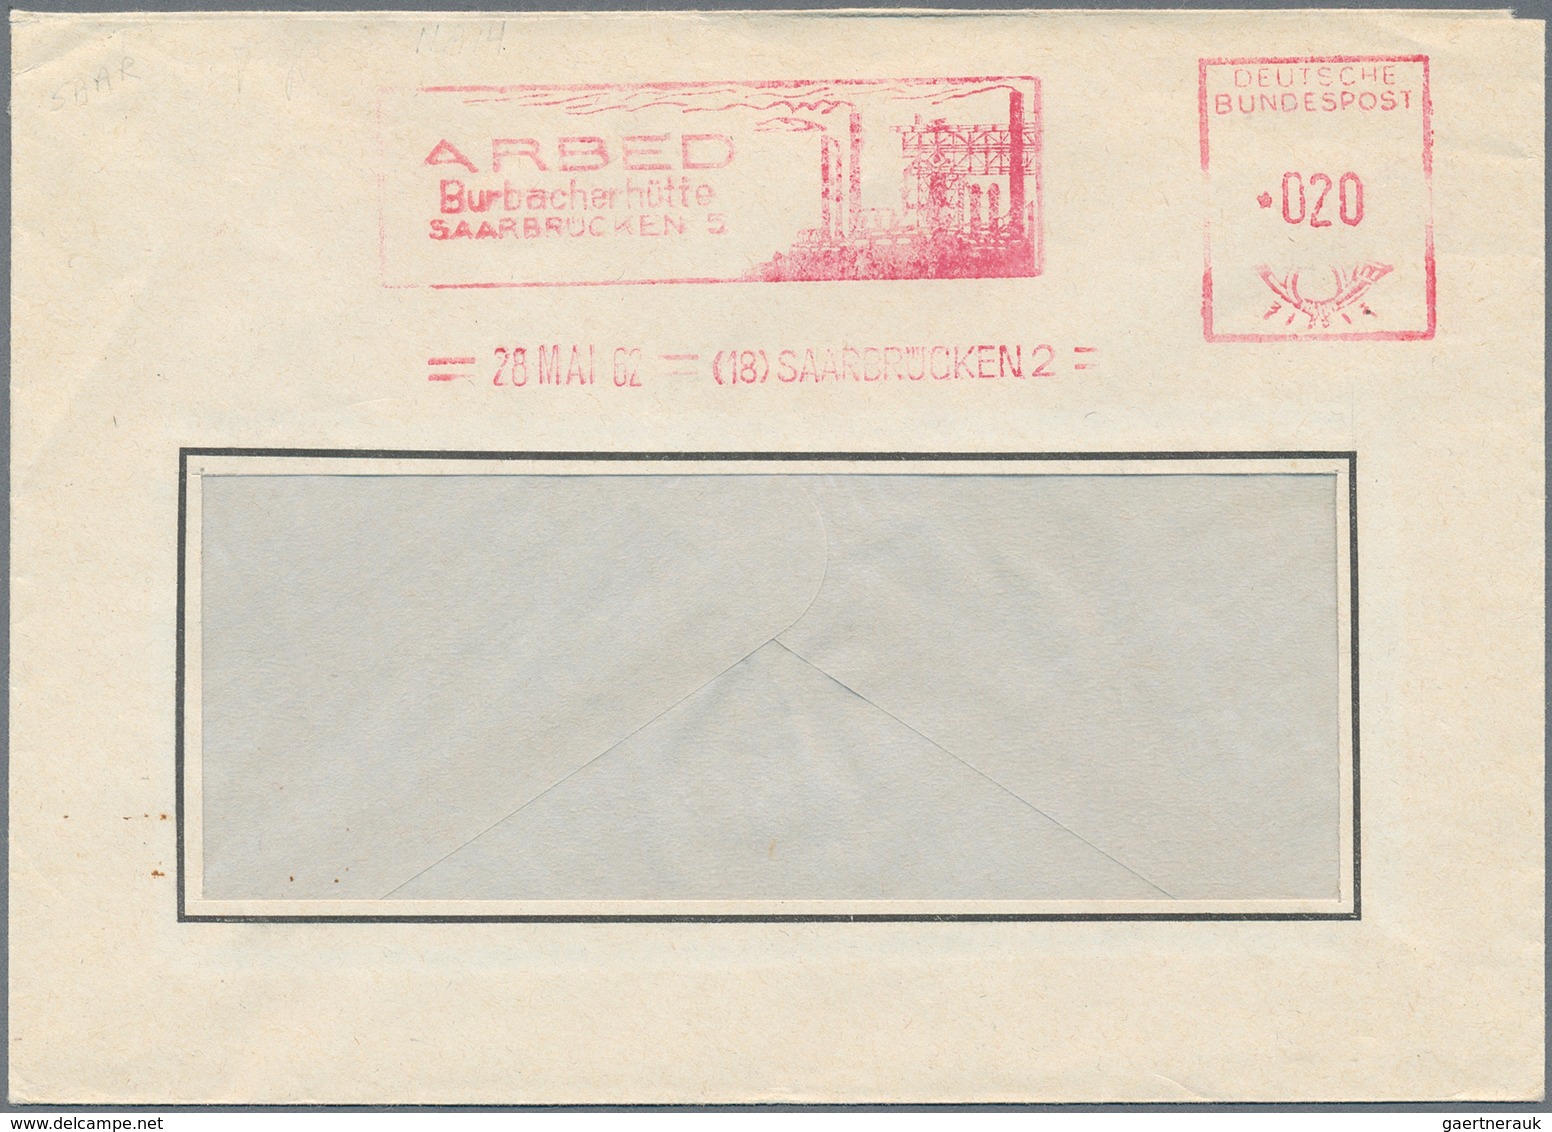 Deutschland: 1924/2005, umfassende Sammlung von Briefen/Karten sowie Briefausschnitten in zwei Alben